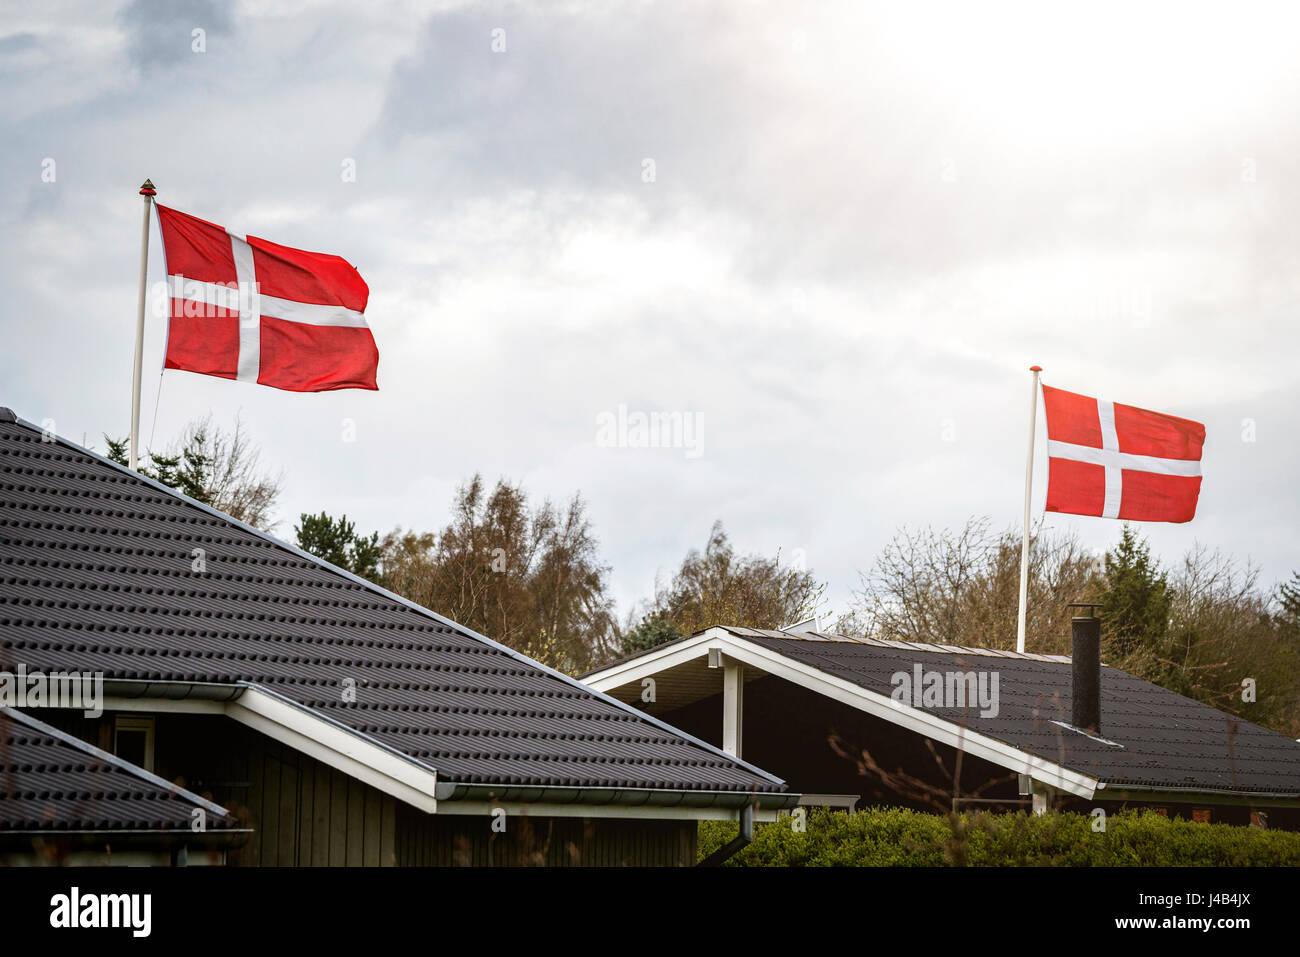 Dänische Flagge Feier in einem Lande Viertel mit kleinen Häusern und maßstabsgerechte Stockfoto